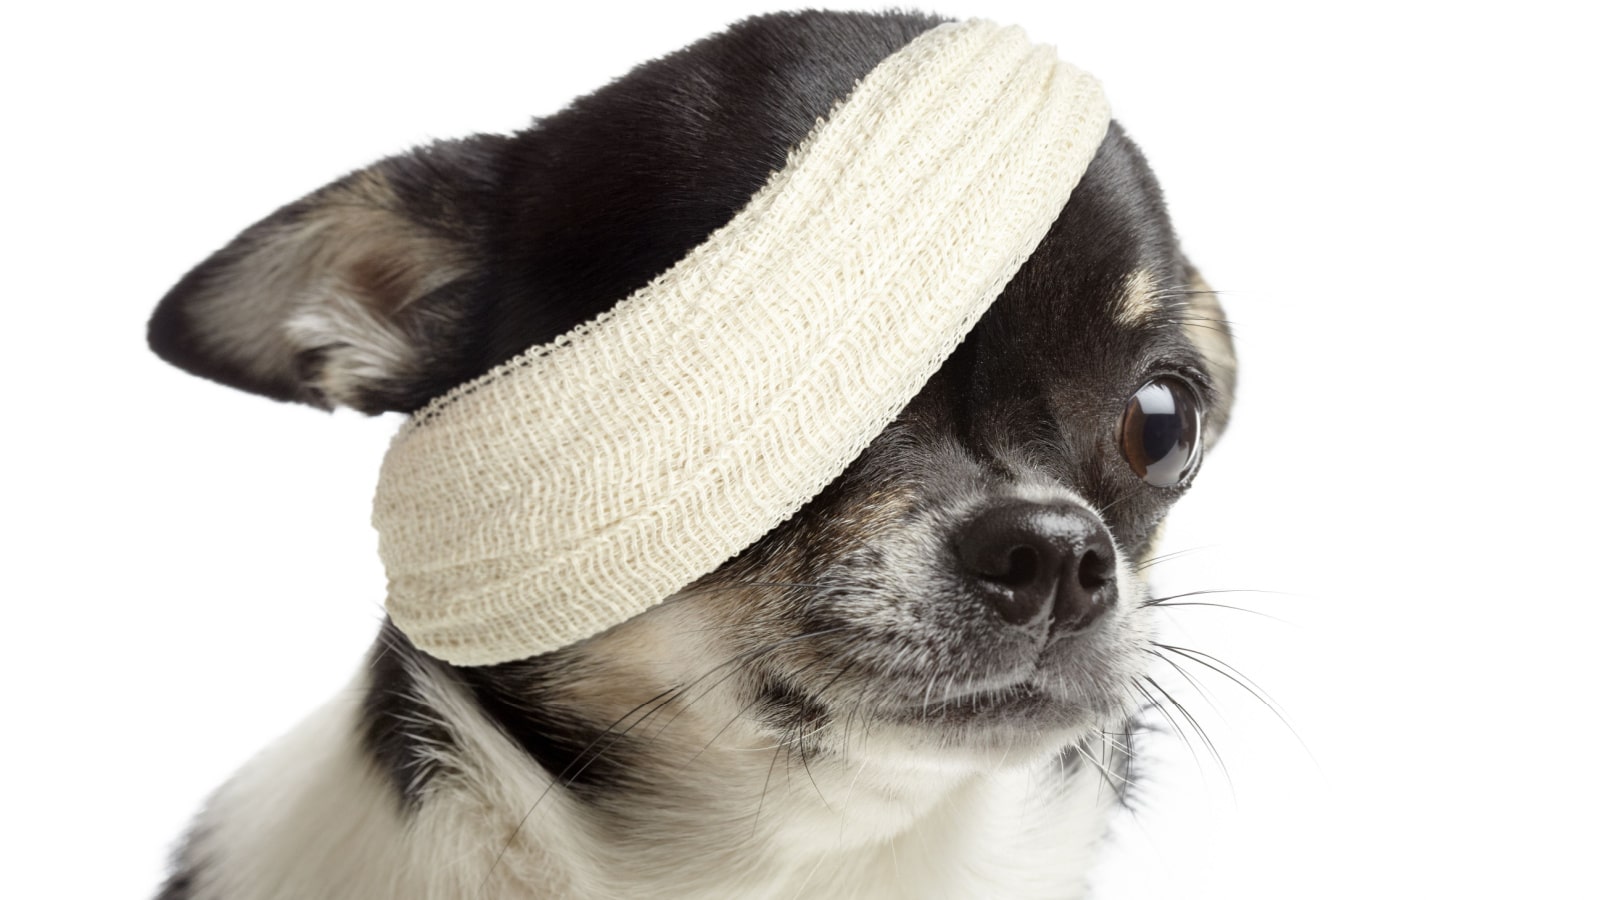 Injured chihuahua dog with bandages on white background